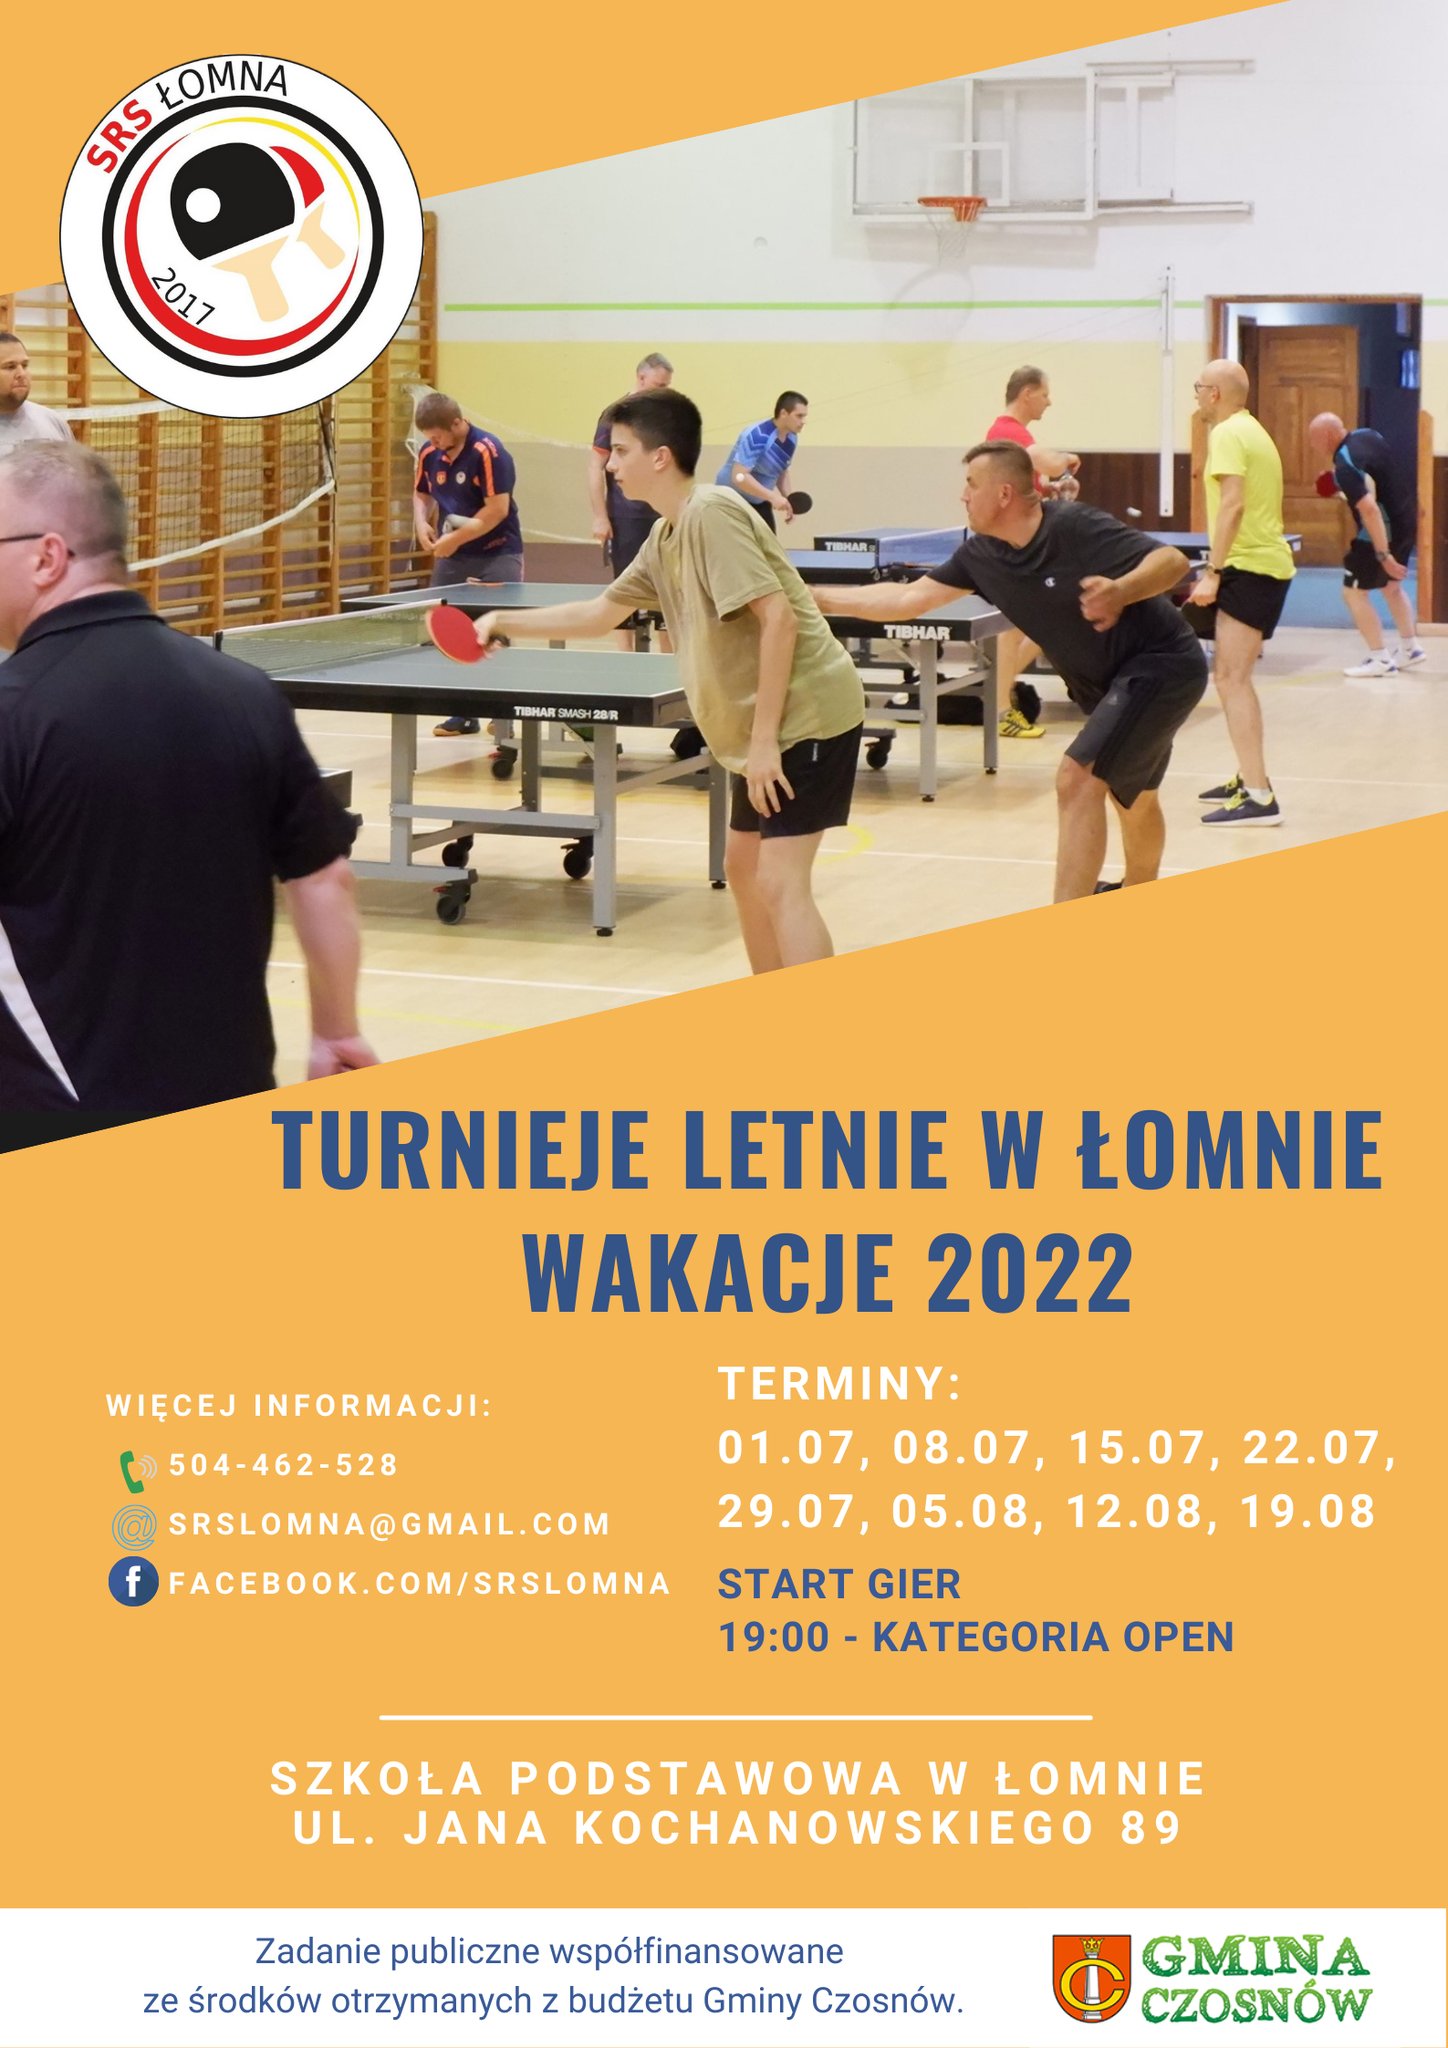 Plakat turnieju Turnieje letnie w Łomnie wakacje 2022 - termin 5